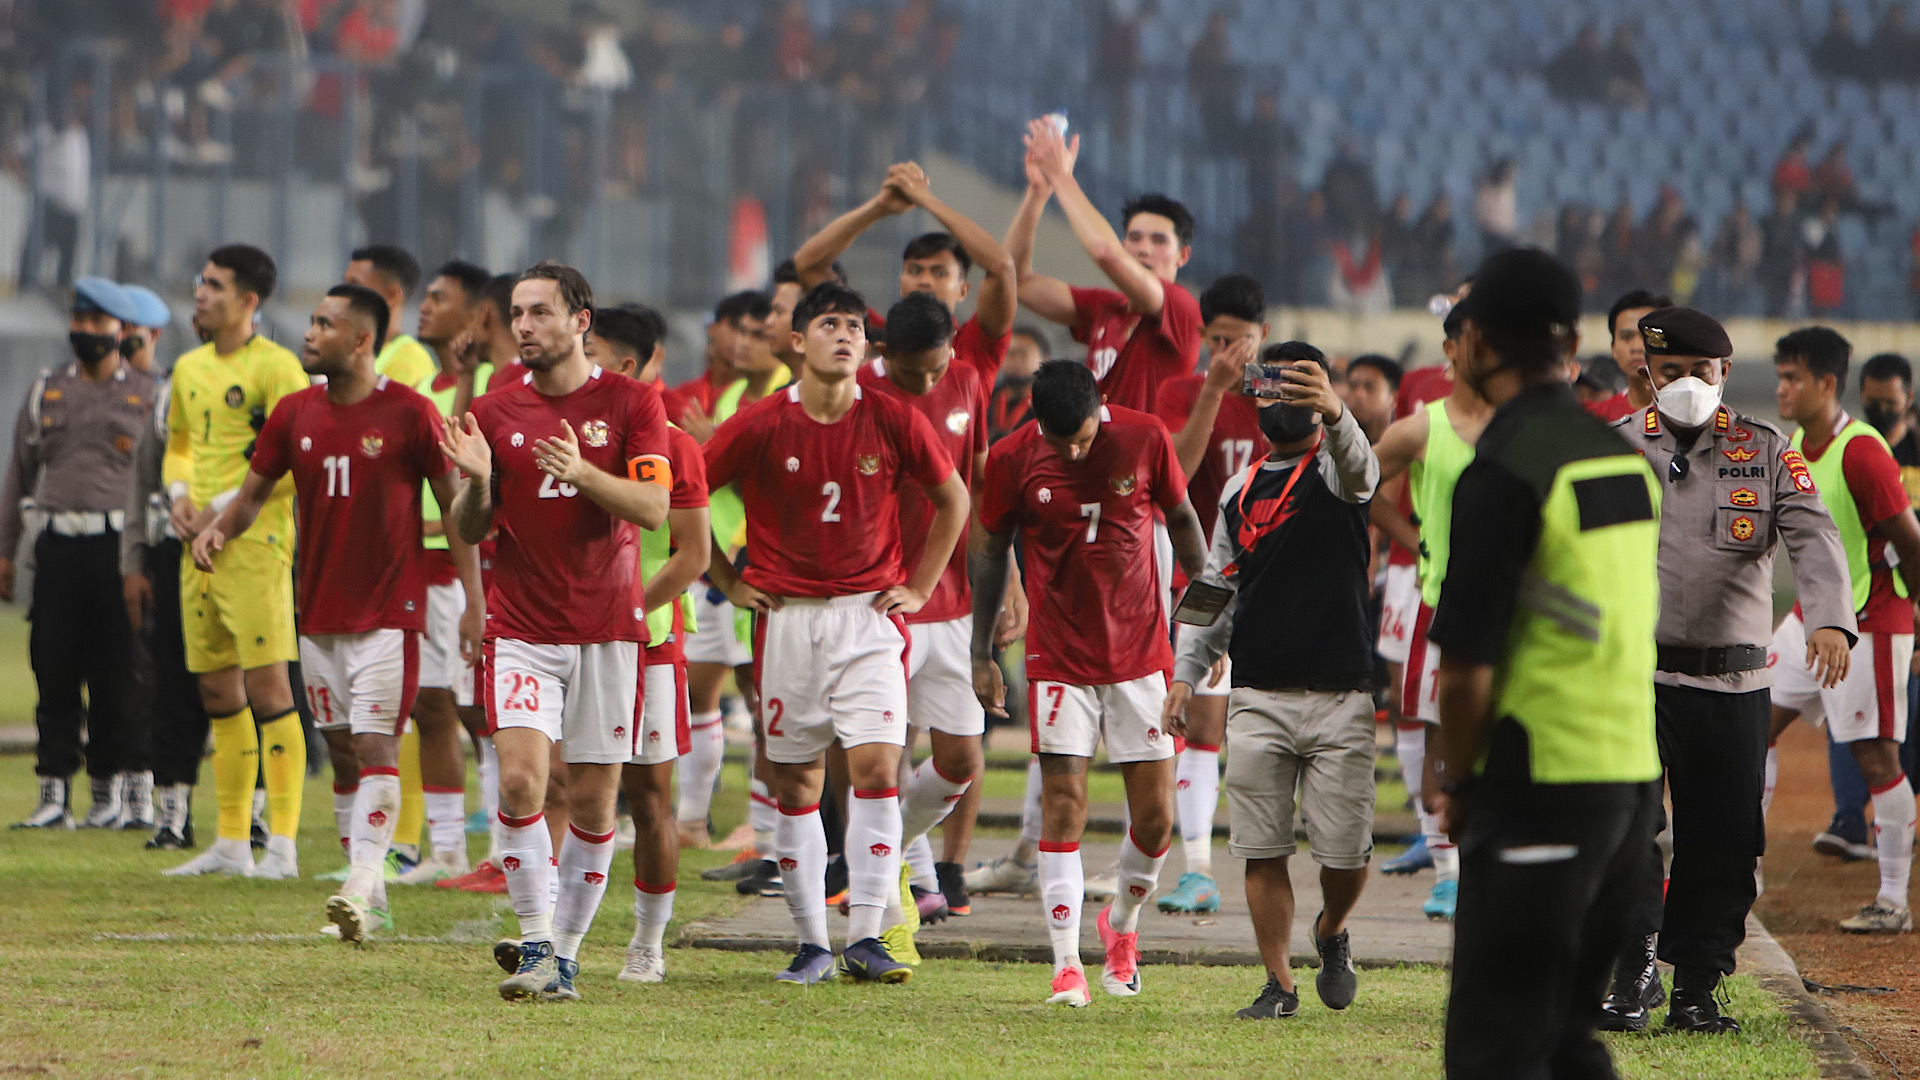 Rekam Jejak Timnas Indonesia di Piala Asia